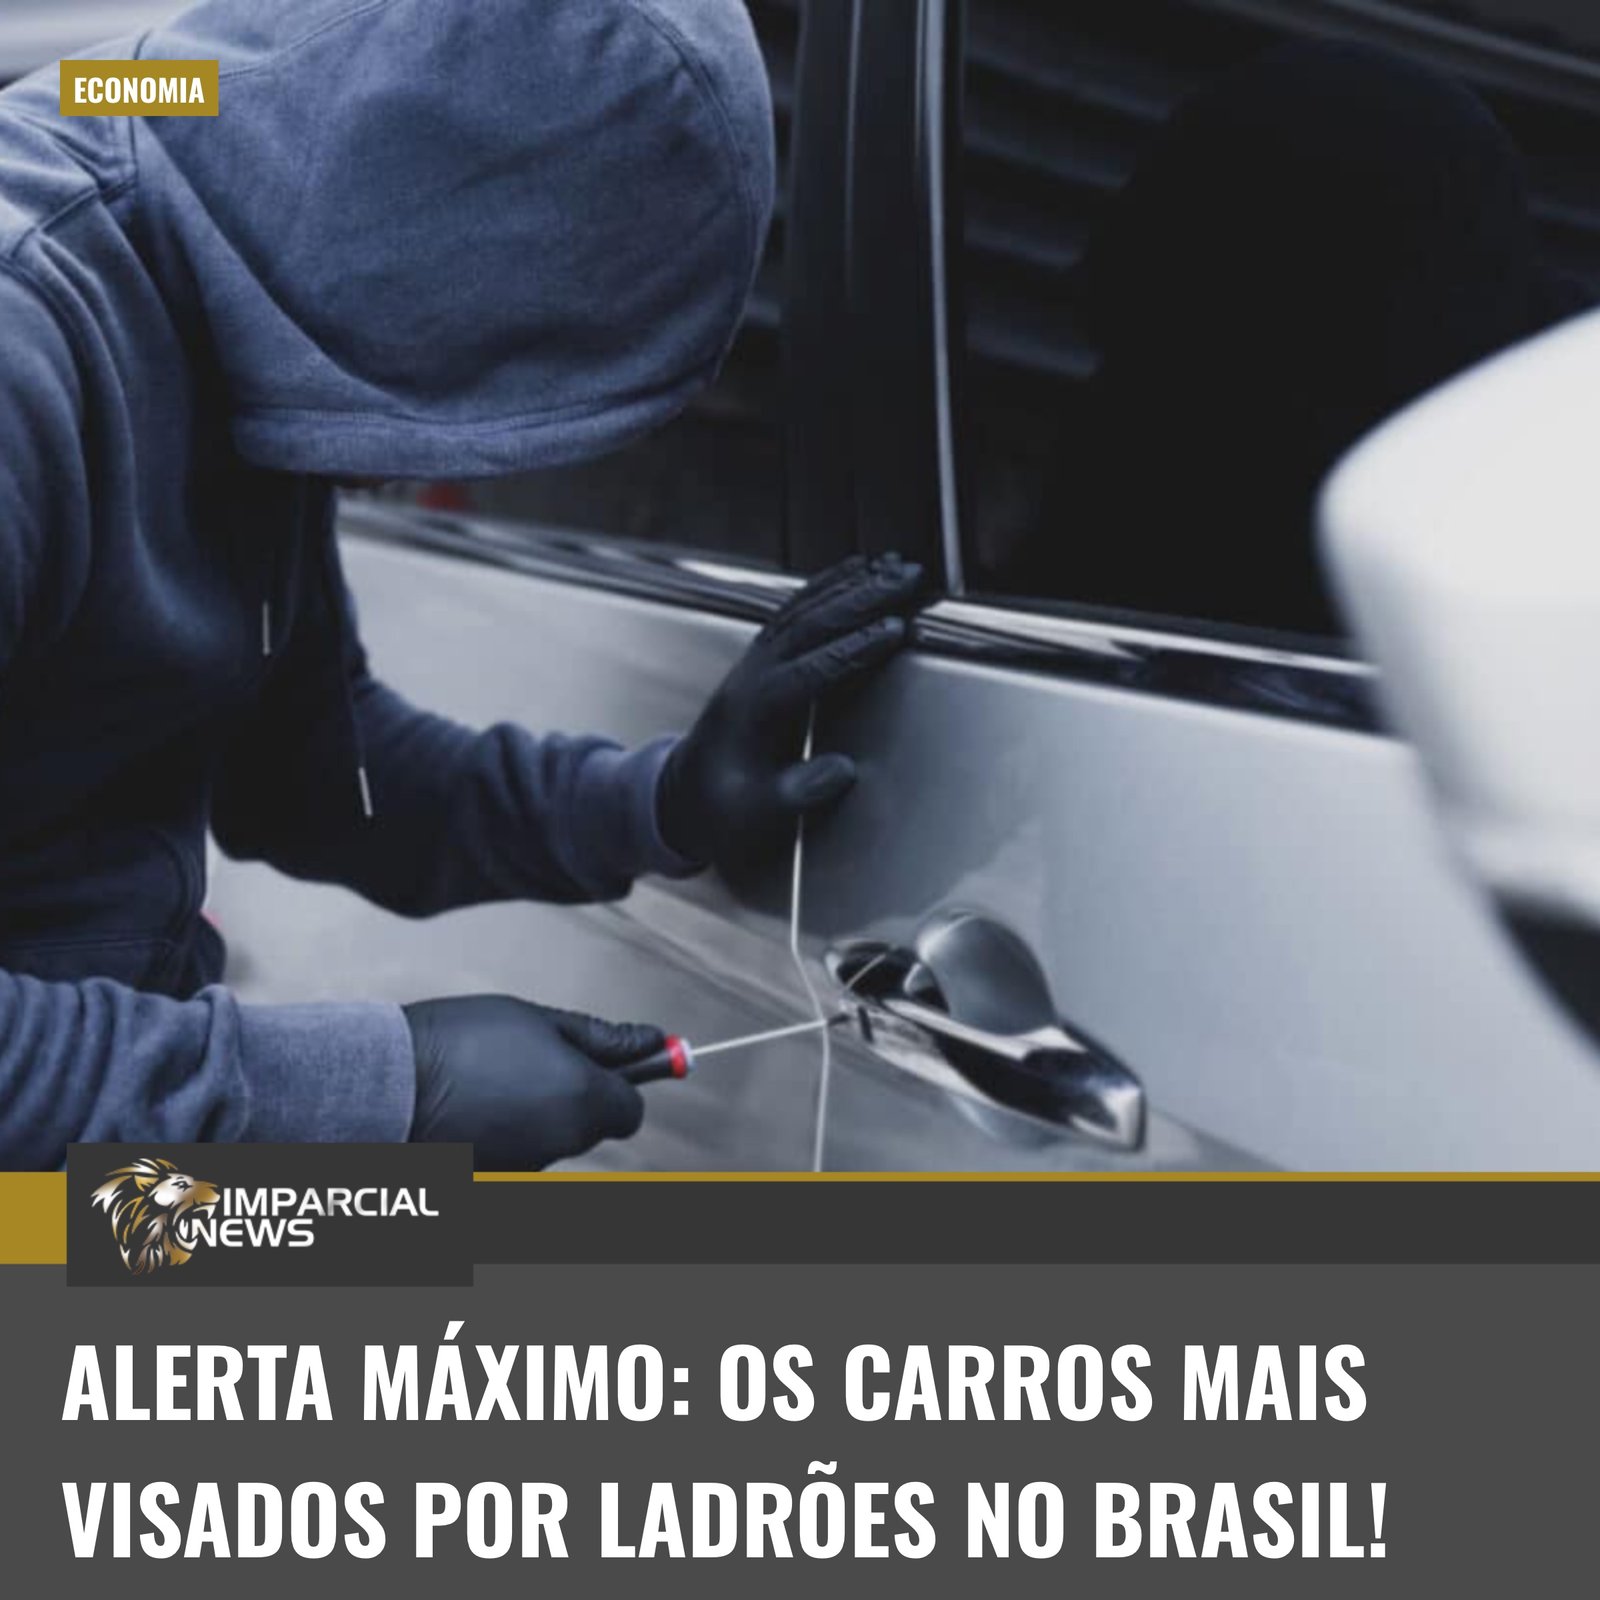  Korkea hälytys: Varkaiden kohteeksi joutuvat autot Brasiliassa!